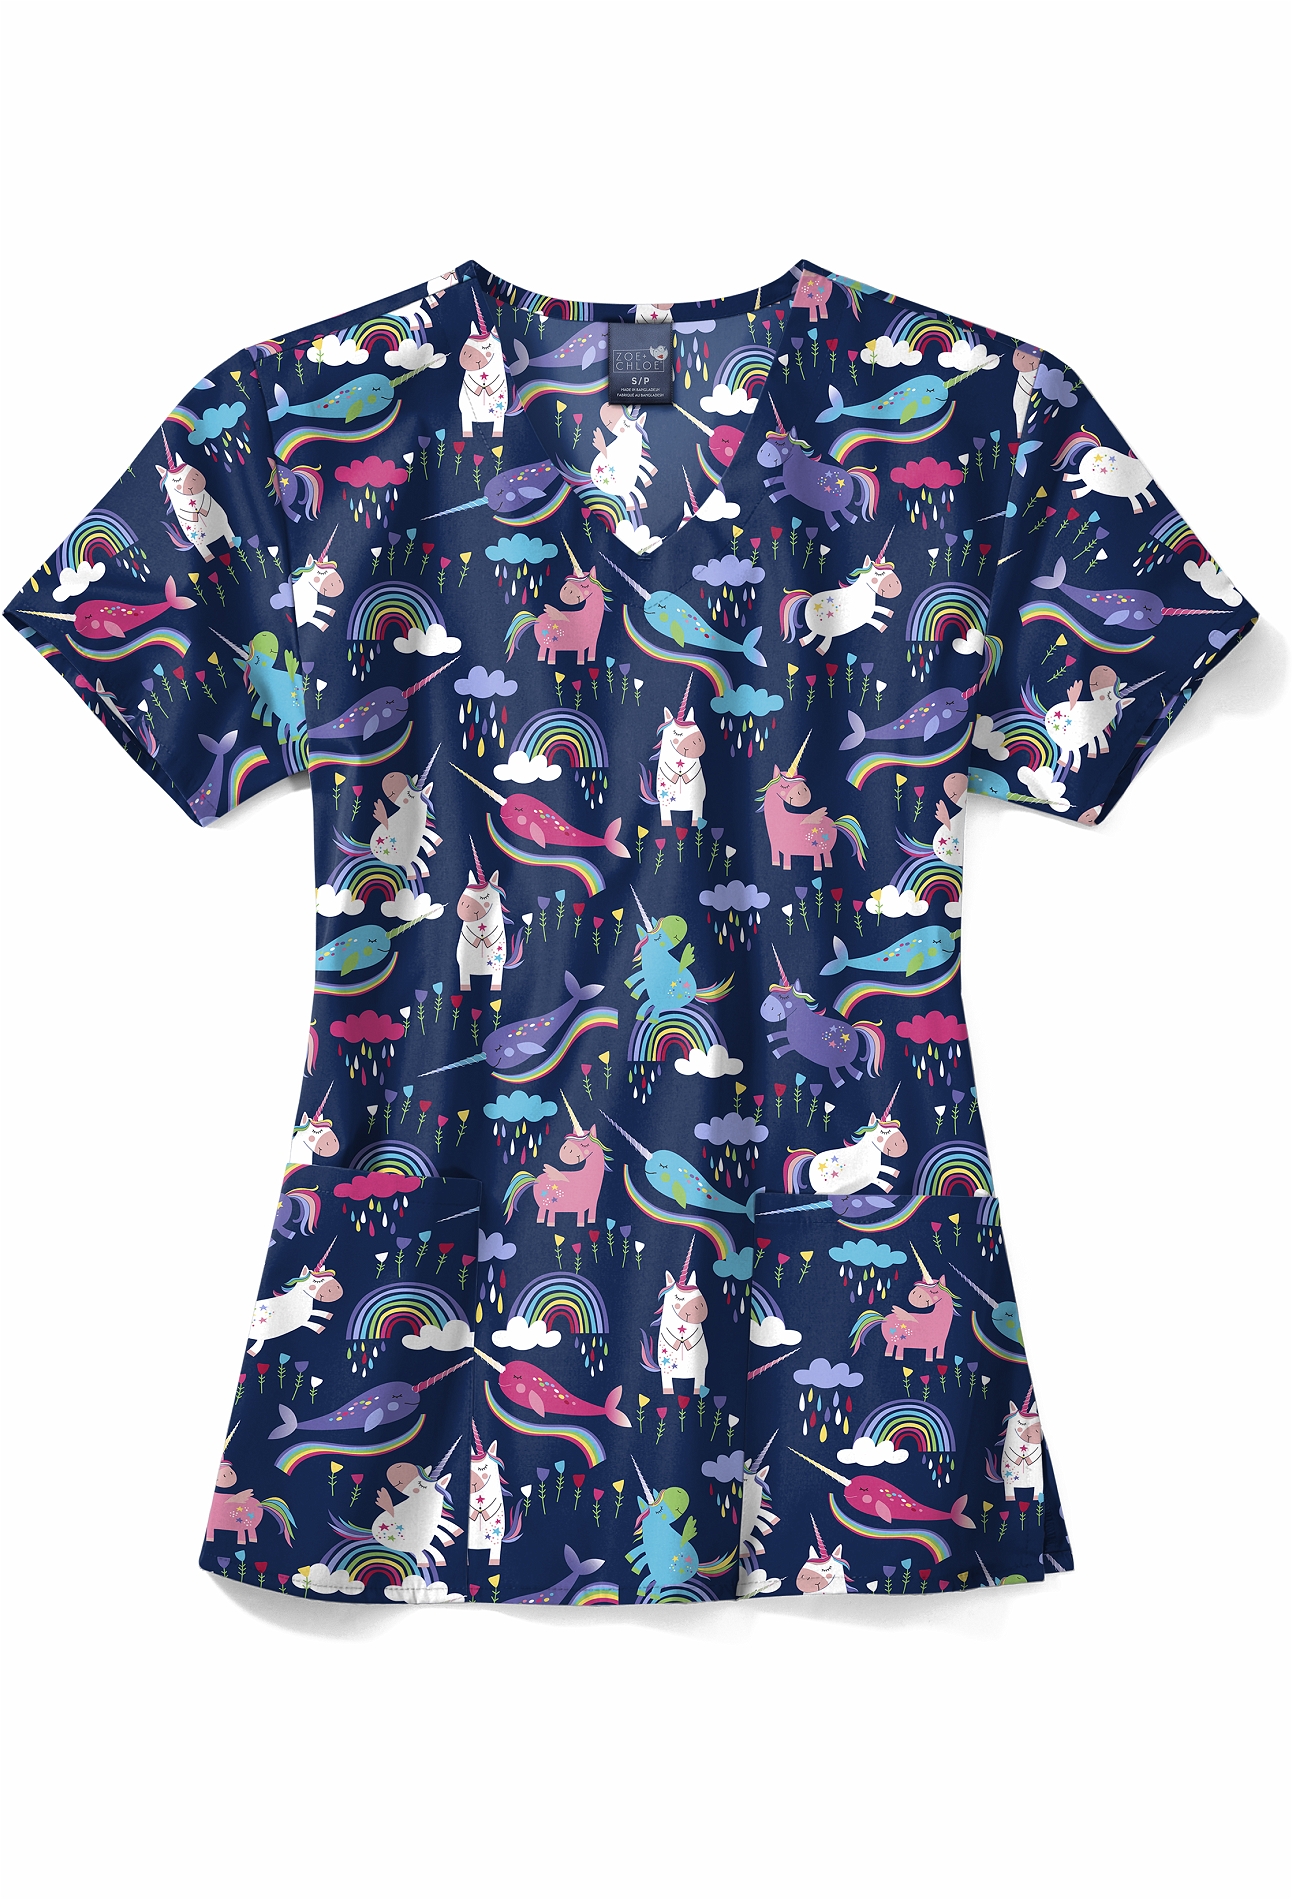 Wonderwink Zoe+Chloe Women's V-Neck Printed Scrub Shirt-Z12202